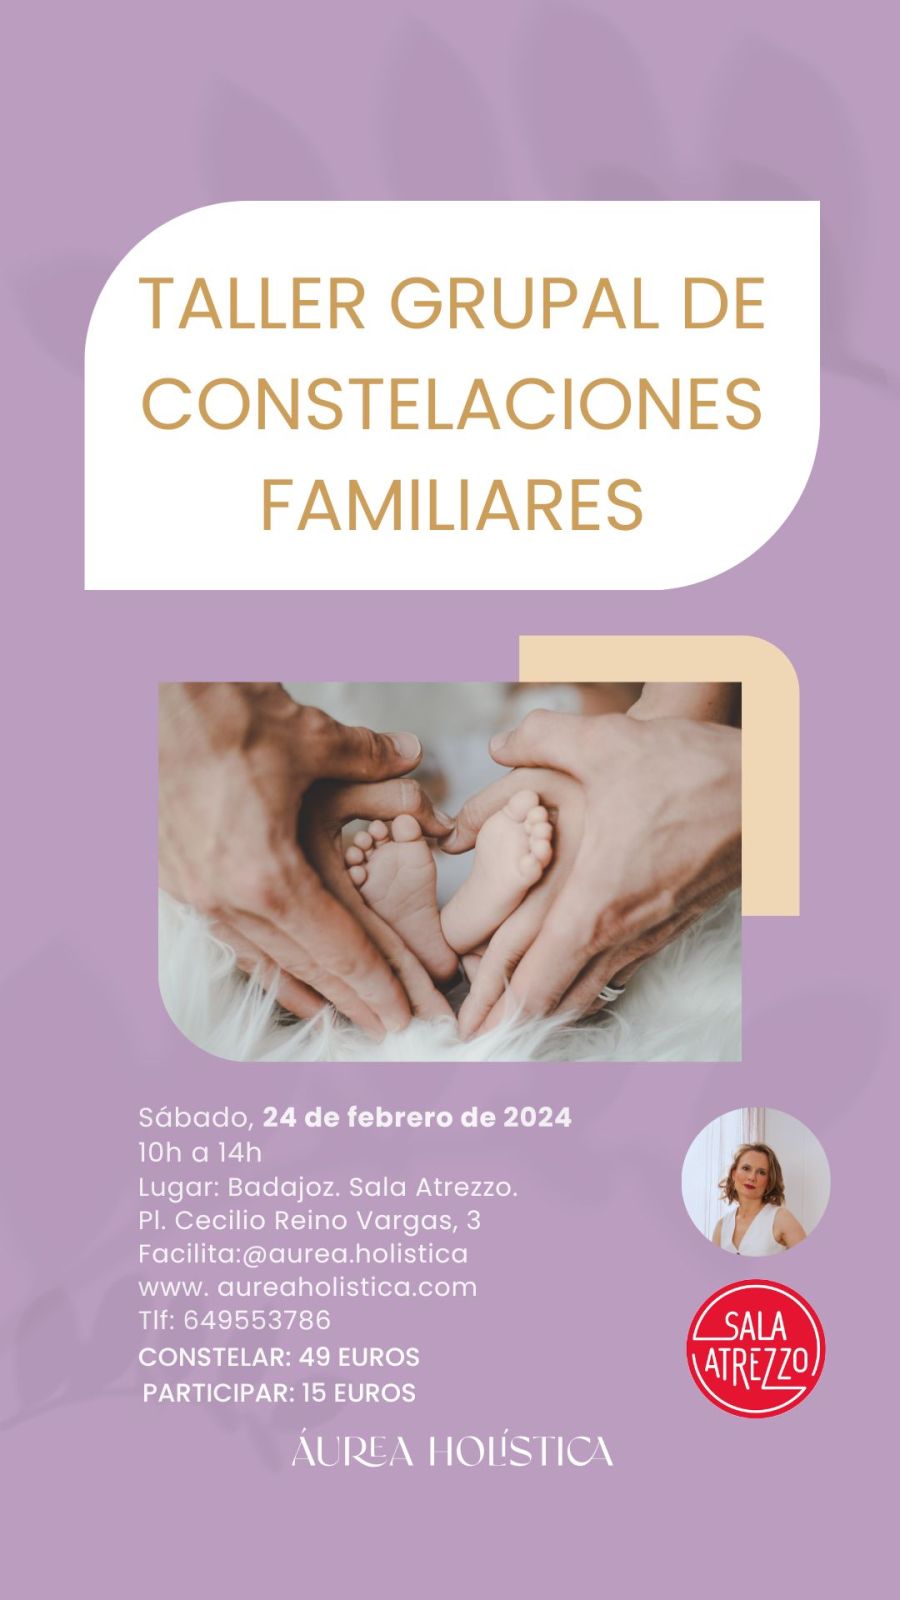 TALLER DE GRUPAL CONSTELACIONES FAMILIARES BADAJOZ | 24 de febrero de 2024